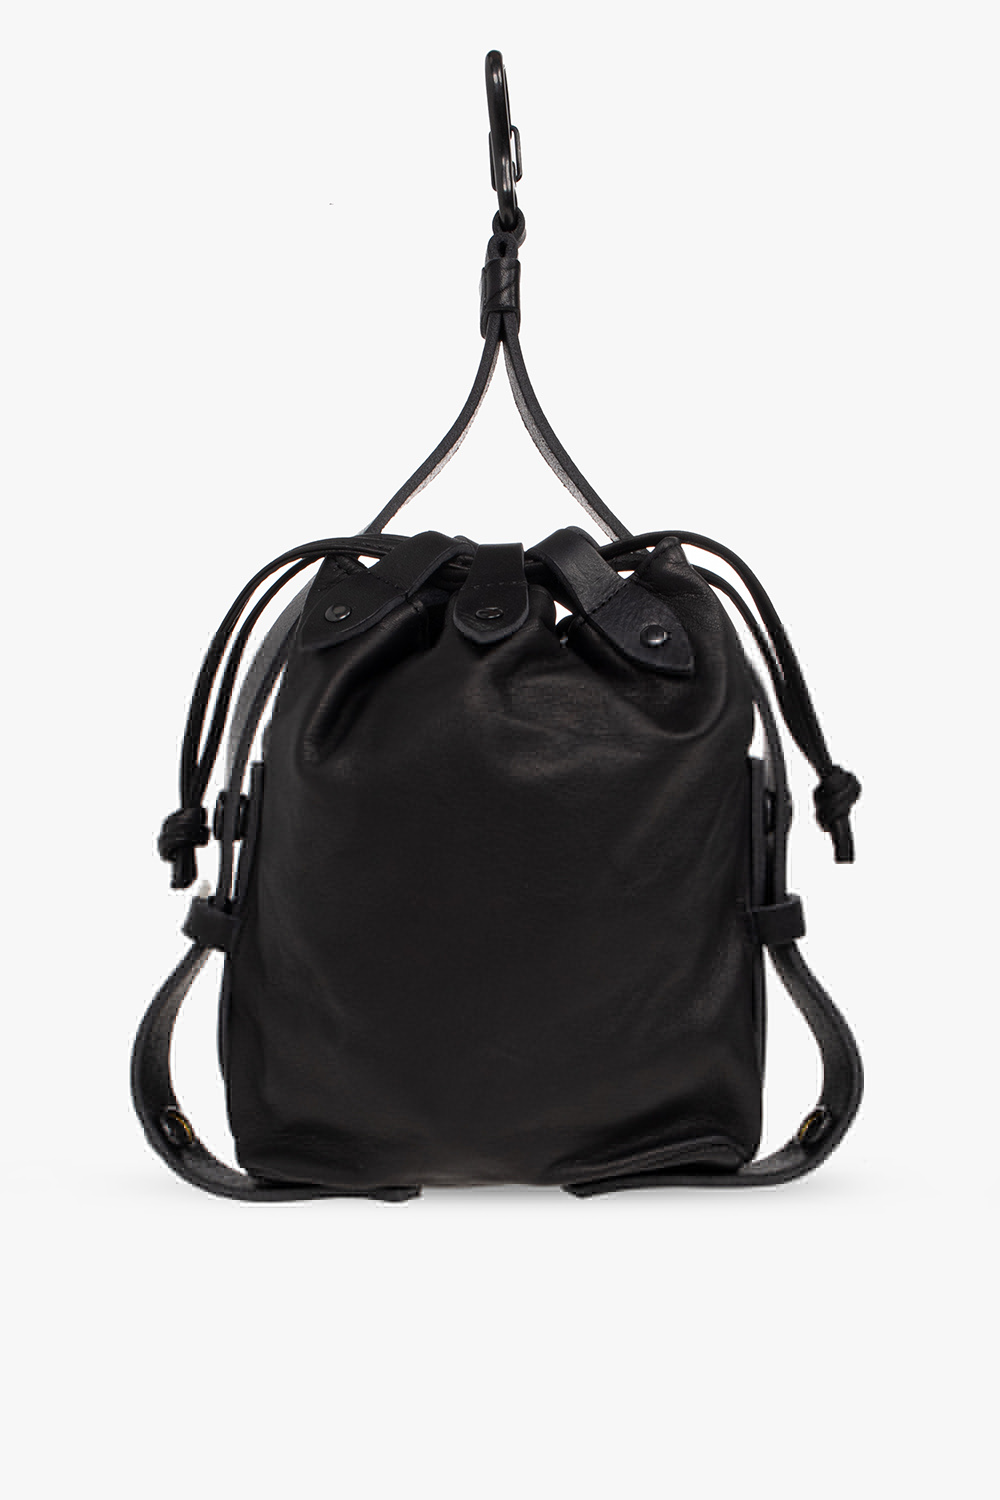 Yohji Yamamoto Leather handbag